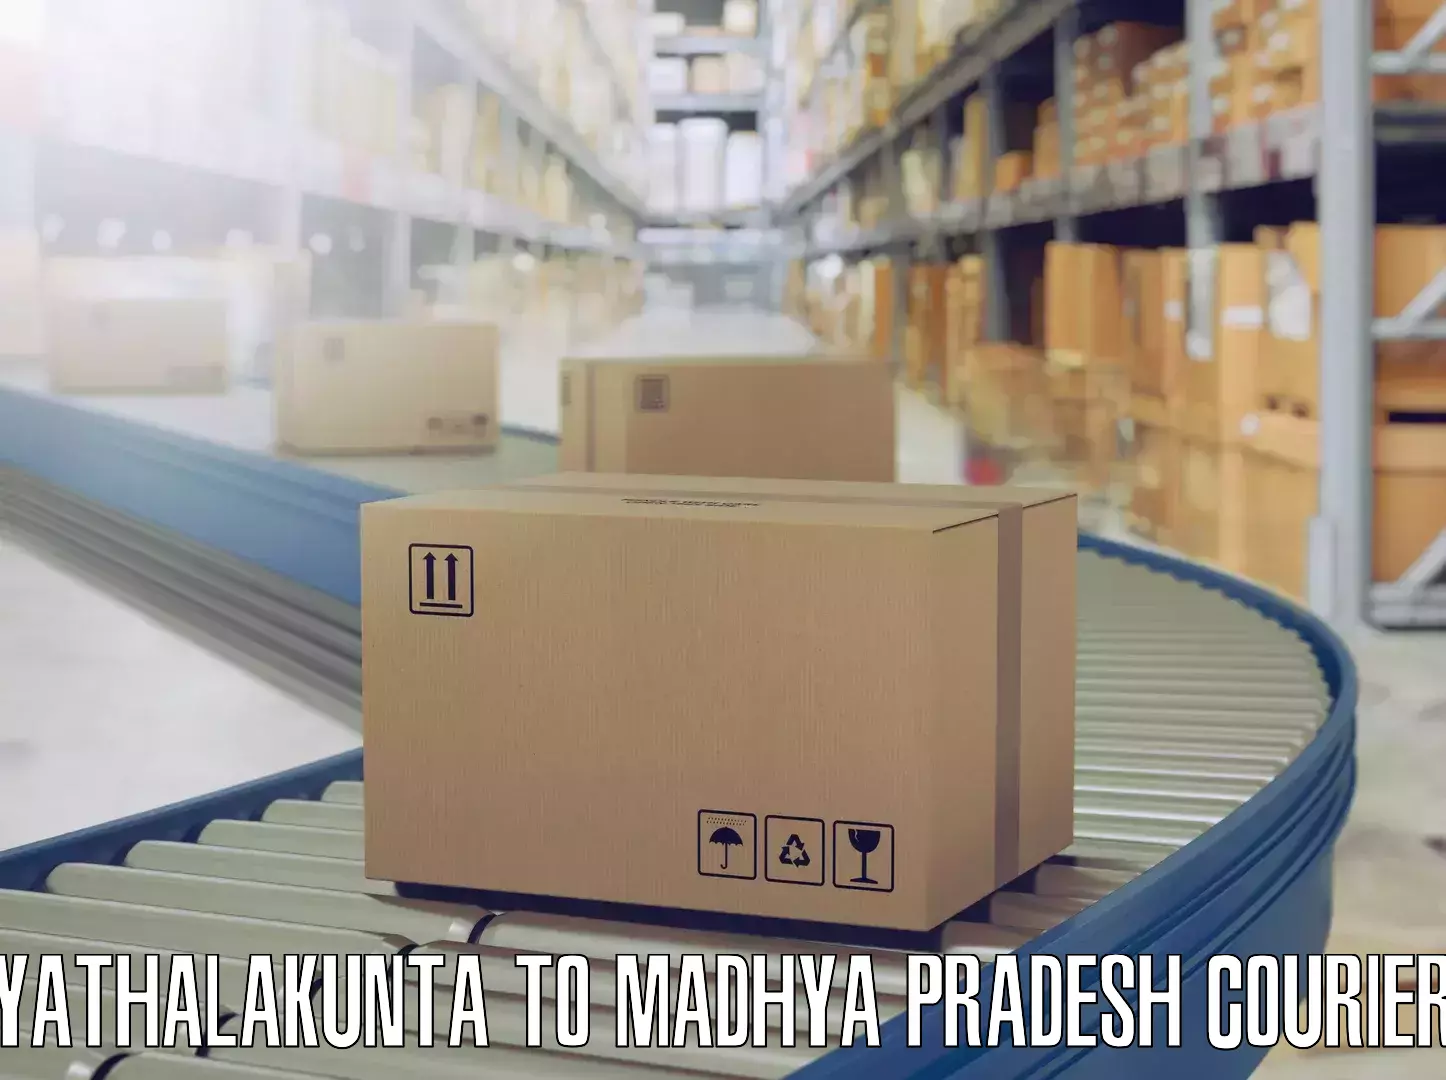 Expert furniture transport Yathalakunta to Ranchha